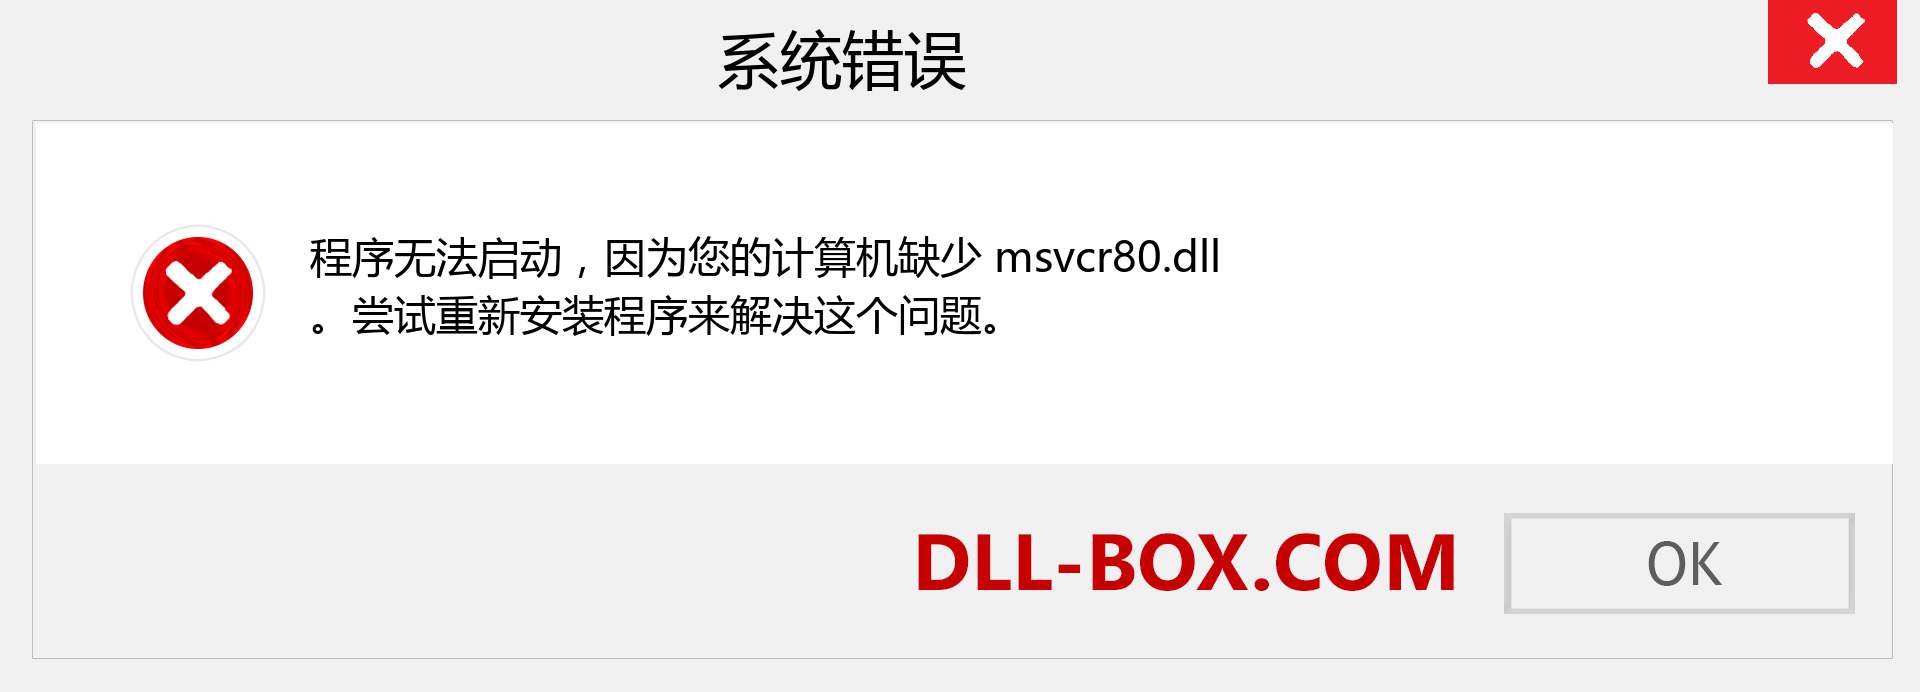 msvcr80.dll 文件丢失？。 适用于 Windows 7、8、10 的下载 - 修复 Windows、照片、图像上的 msvcr80 dll 丢失错误